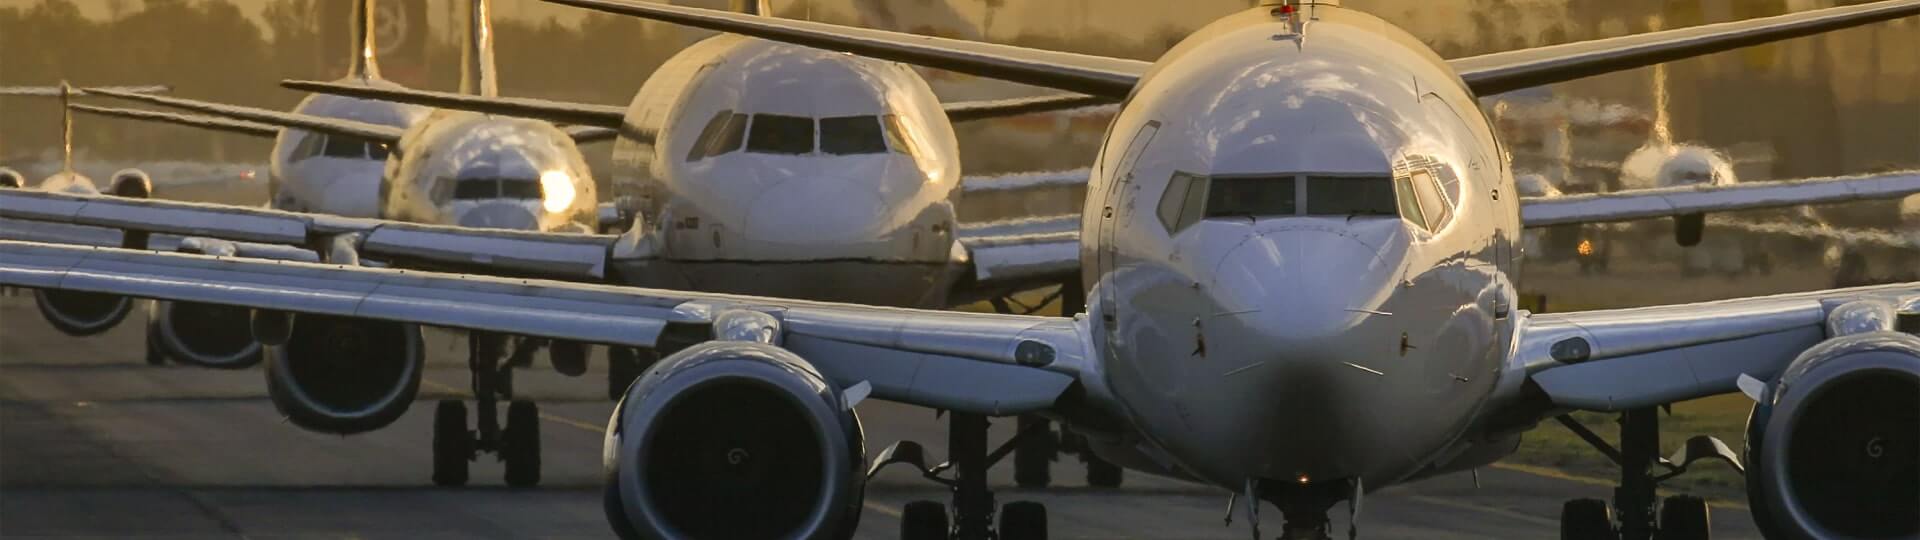 Boeing vykázal ve čtvrtletí ztrátu navzdory vyšší poptávce po letadlech